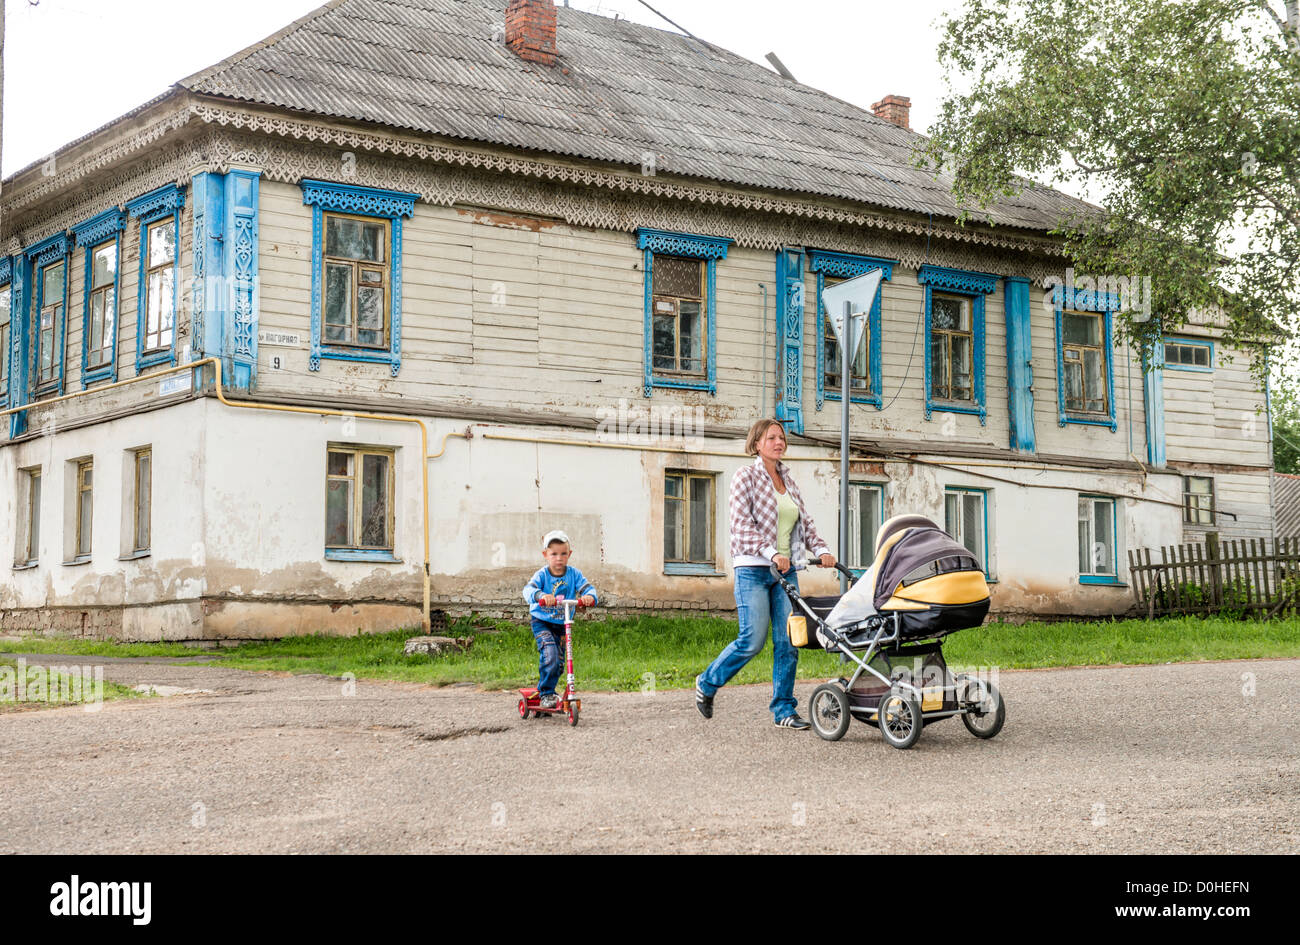 Life scene in the Russian village. Taken in Myshkin village, Russia on July 2012. Stock Photo